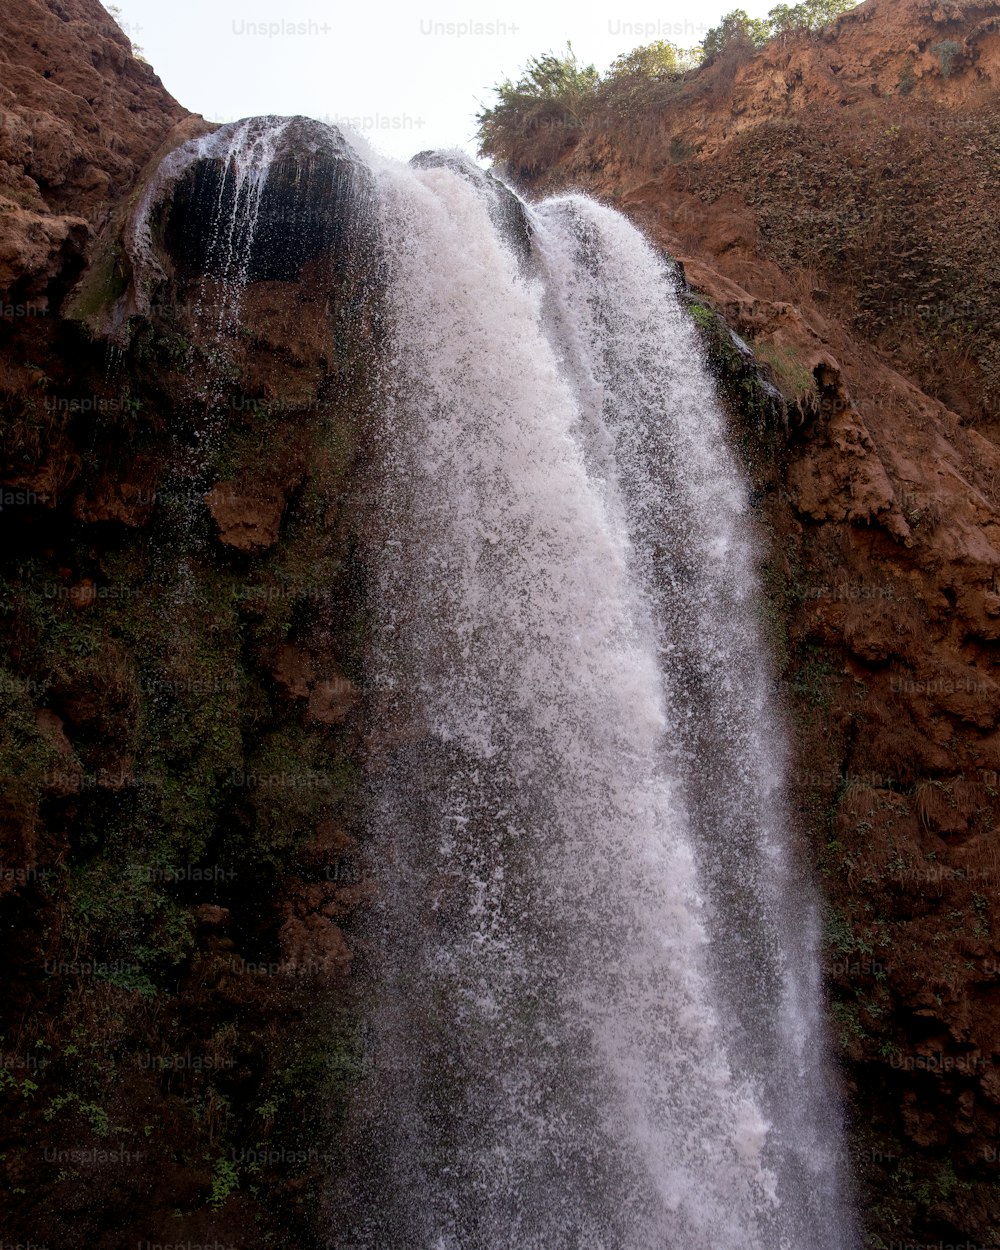 una cascata molto alta con molta acqua che esce da essa